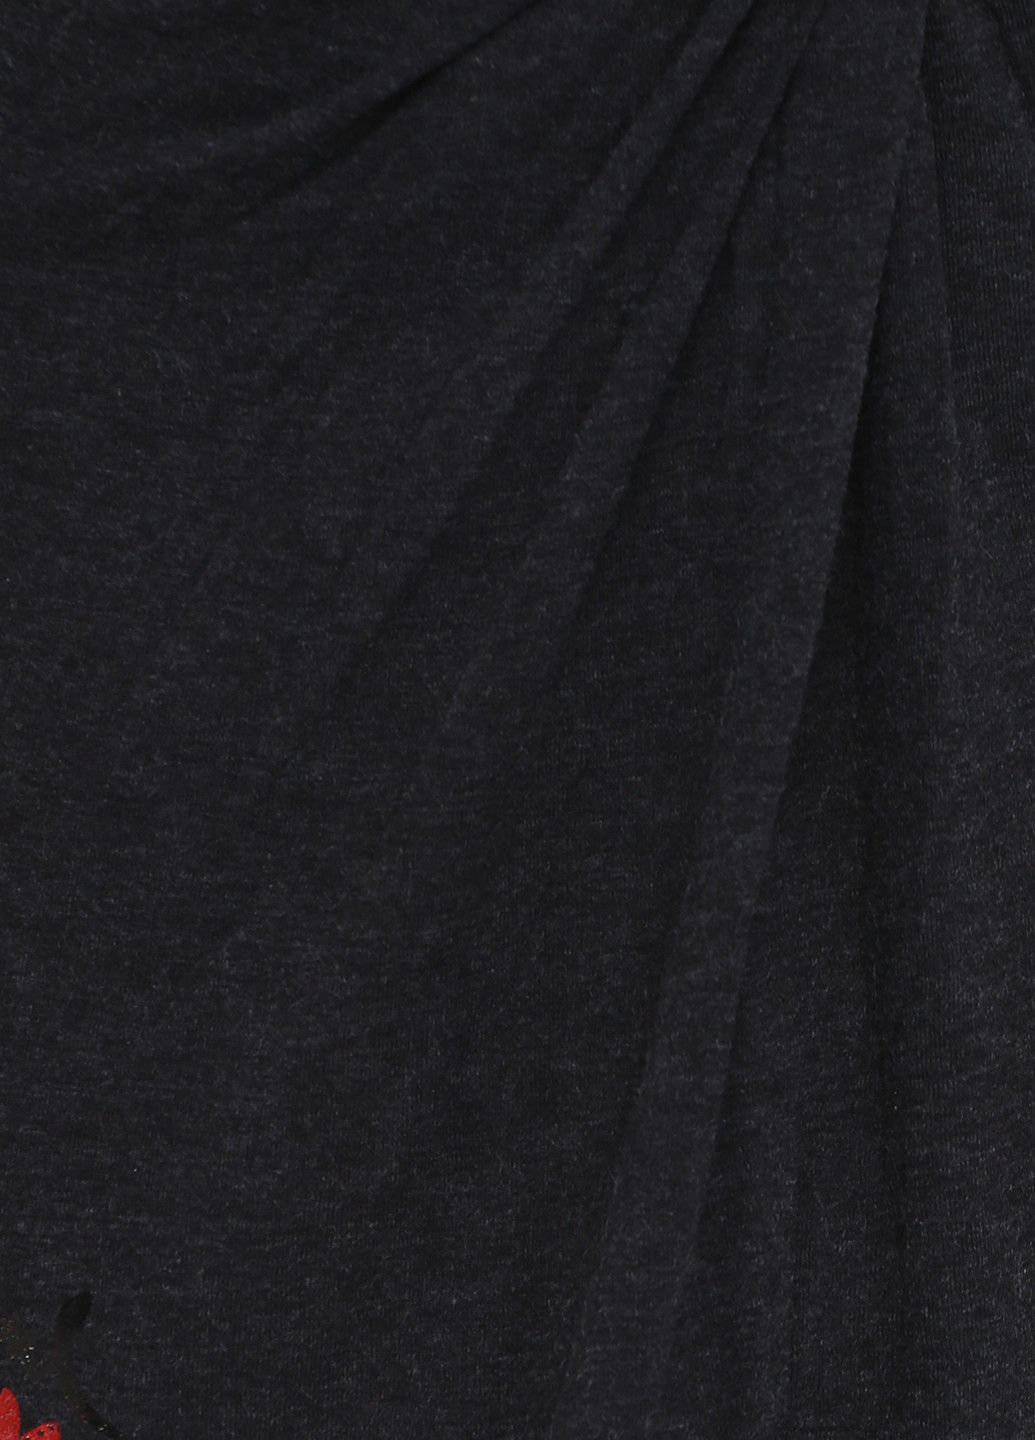 Темно-сіра коктейльна сукня Desigual з малюнком